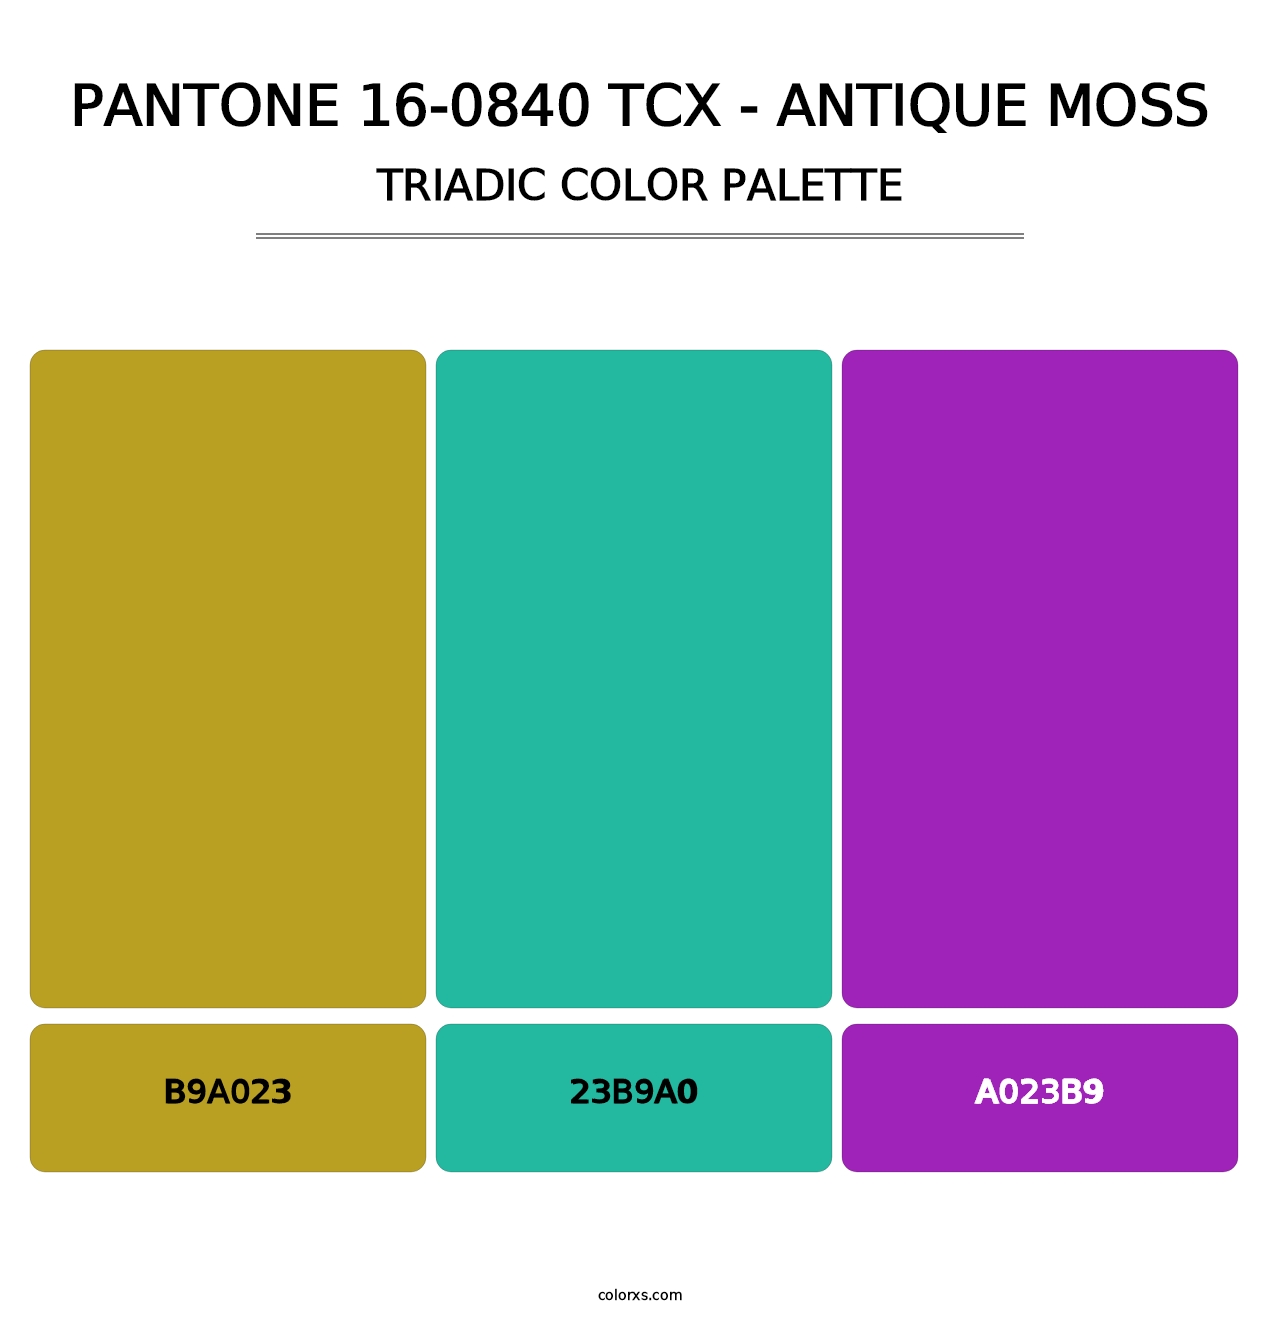 PANTONE 16-0840 TCX - Antique Moss - Triadic Color Palette